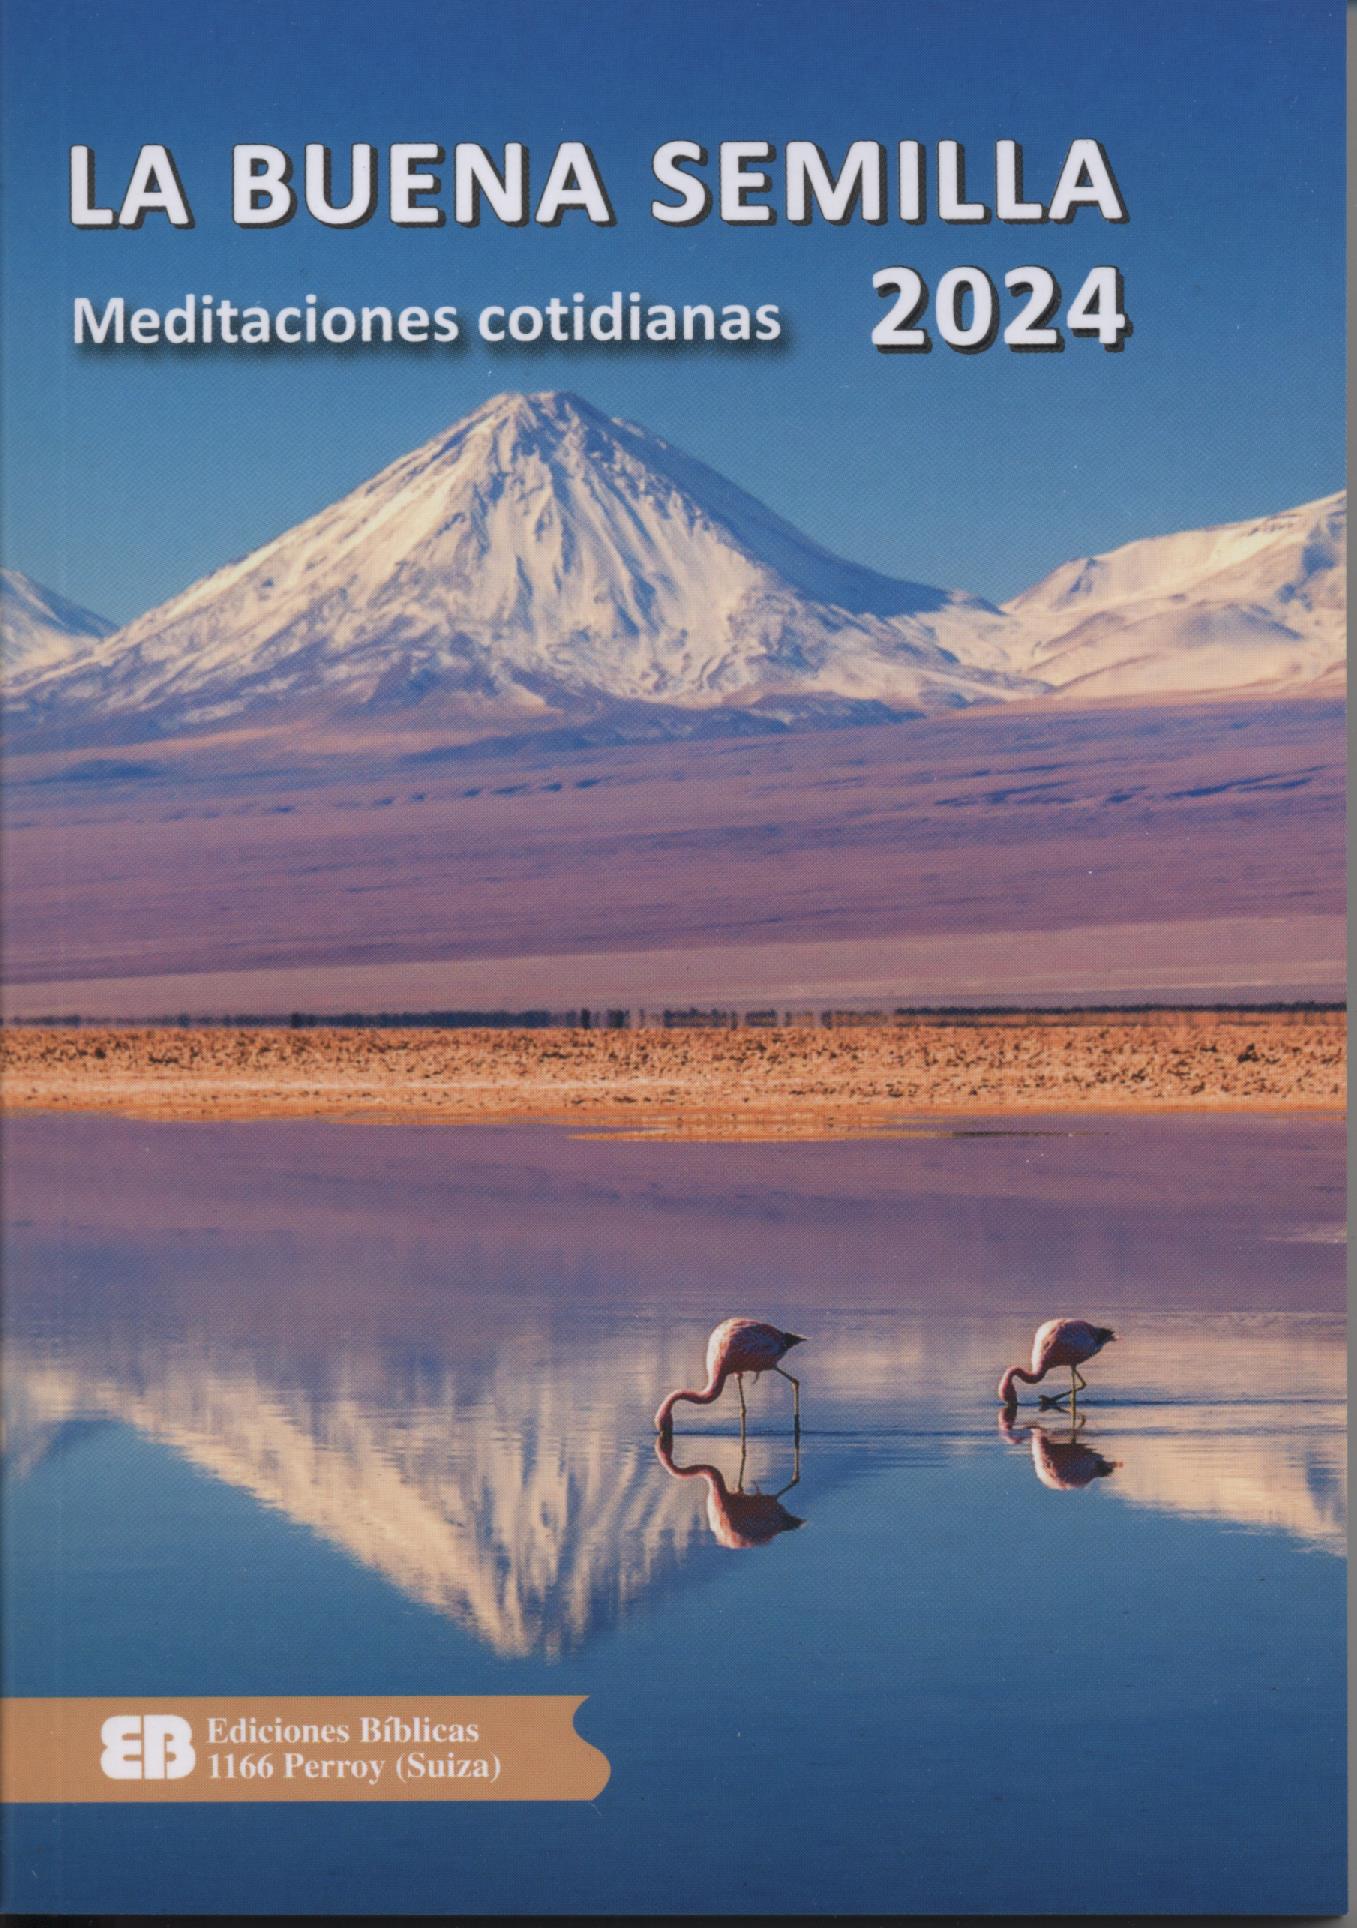 Calendario Libro La Buena Semilla 2024 Meditaciones cotidianas